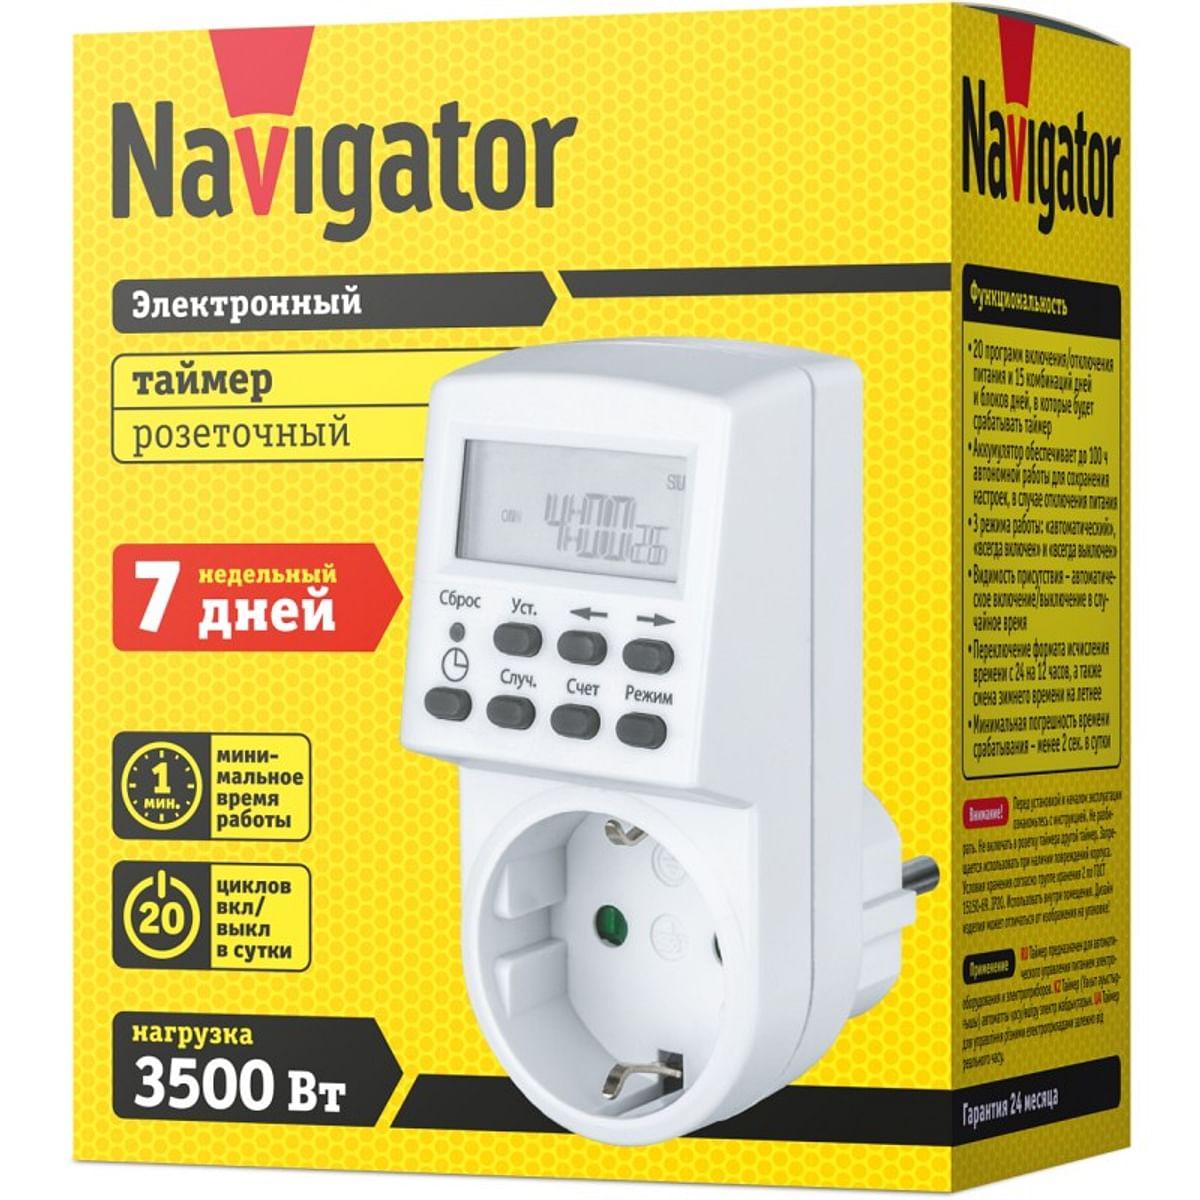 Navigator 61555